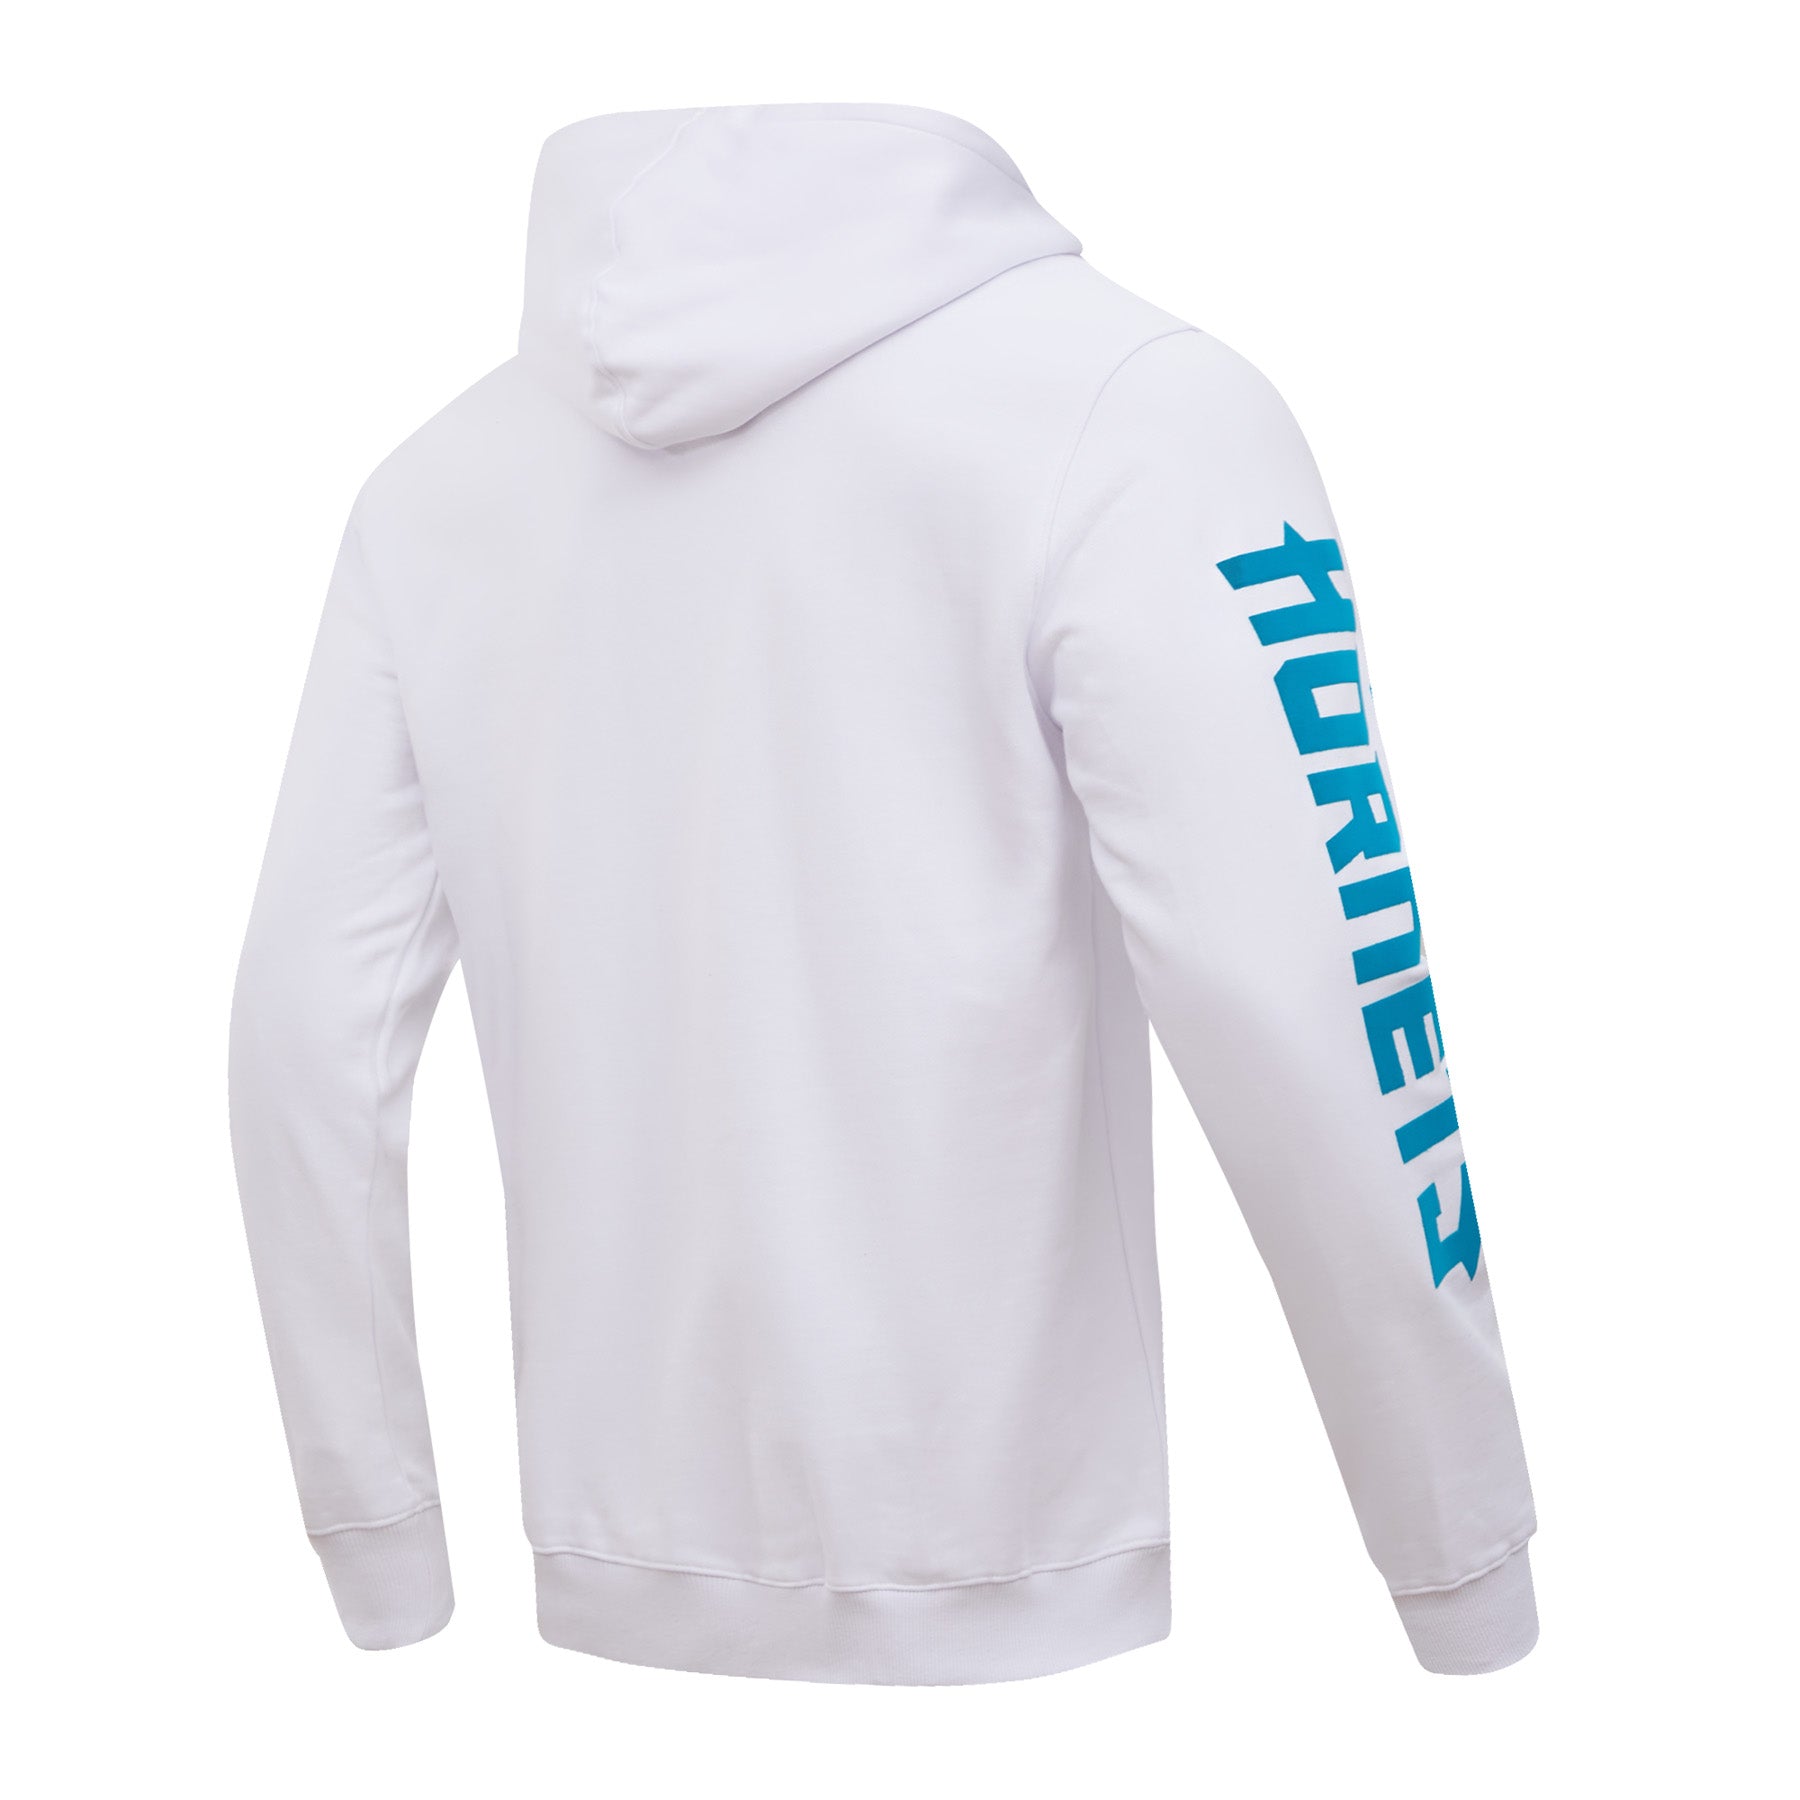 Pro Standard Mens Hornets Graphic Sj T-Shirt - White/White Size XL